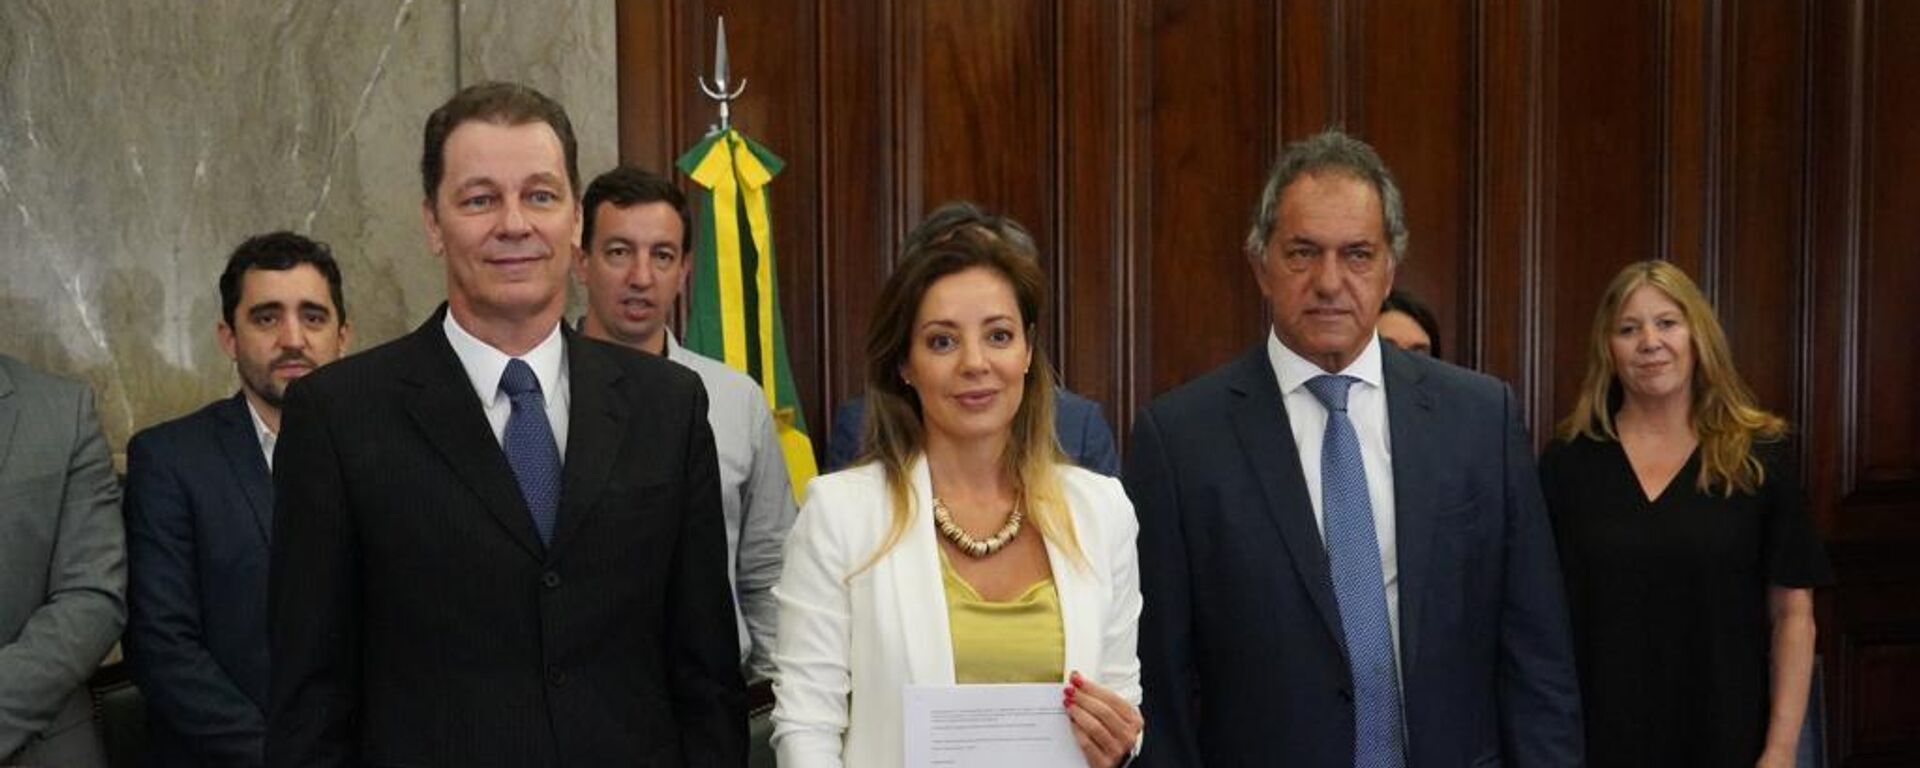 Argentina y Brasil suscriben acuerdo de intercambio de energía hasta 2025 - Sputnik Mundo, 1920, 24.11.2022